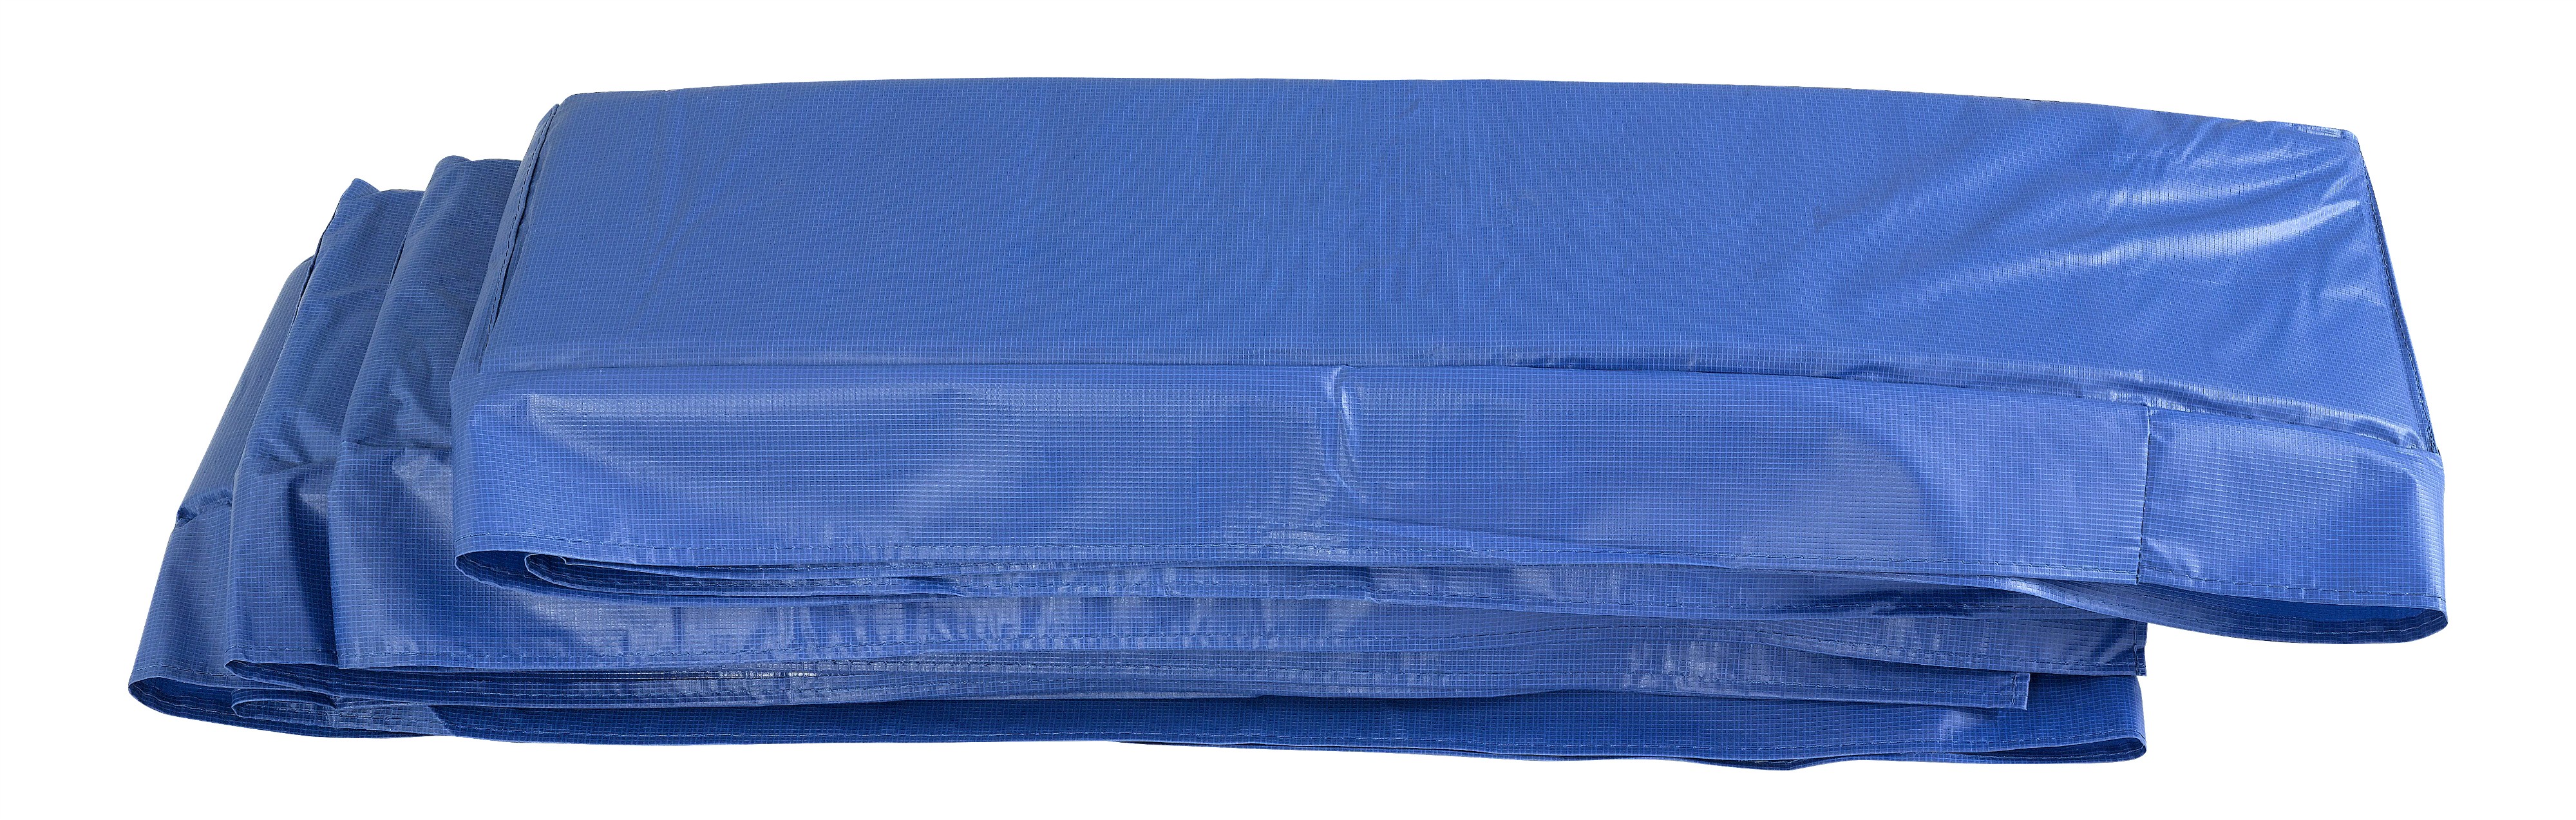 Coussin de Protection et Sécurité Couvre Ressorts Remplacement pour Trampoline Rectangulaire 457 x 274 cm | Bleu